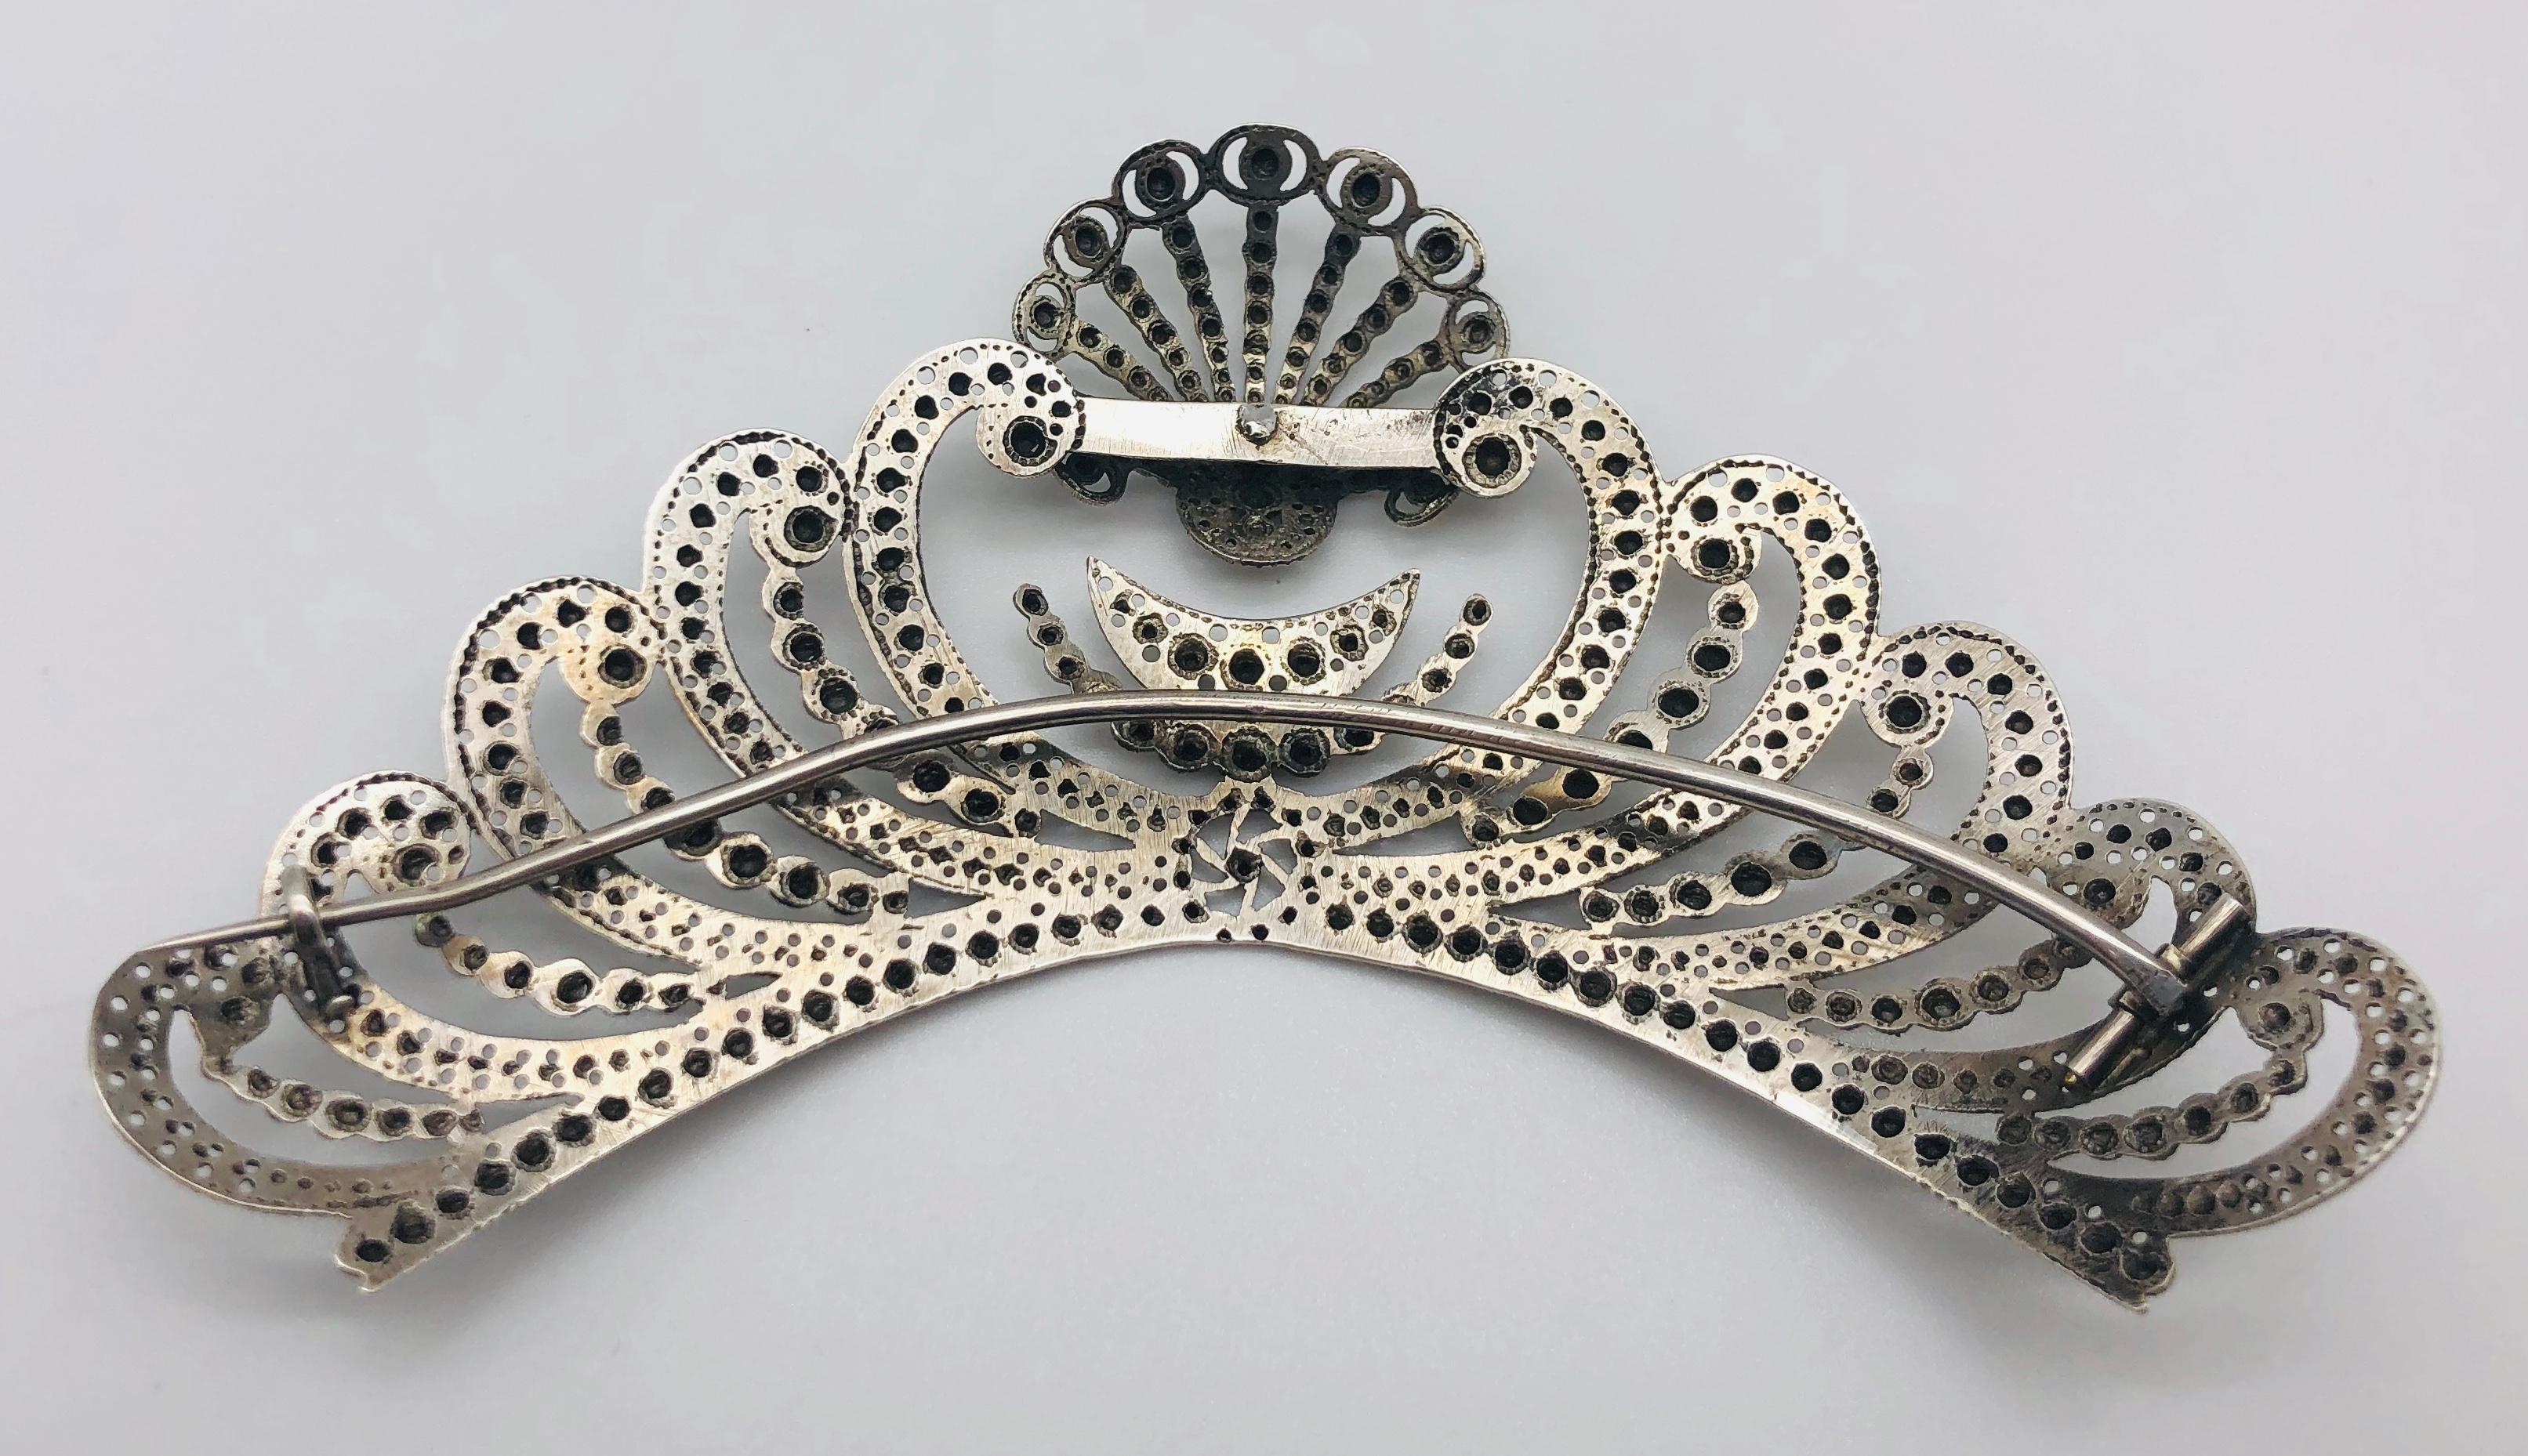 Die Kopfbedeckung ist aus Silber gefertigt und mit einer Jakobsmuschel, einem Halbmond und einem Halbmond verziert. Auf einem großen stilisierten Herz sitzt eine Jakobsmuschel. Links und rechts des Herzens befinden sich acht wellenförmige Ornamente.